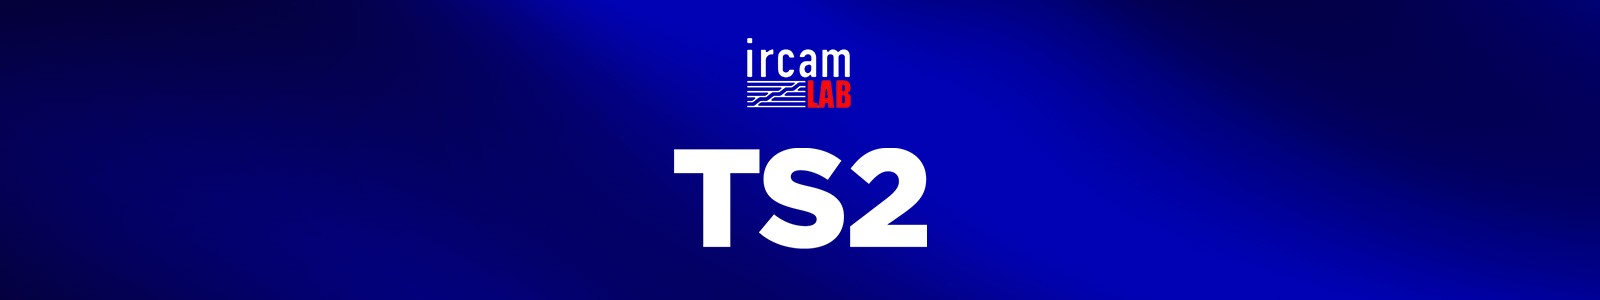 IrcamLAB TS2